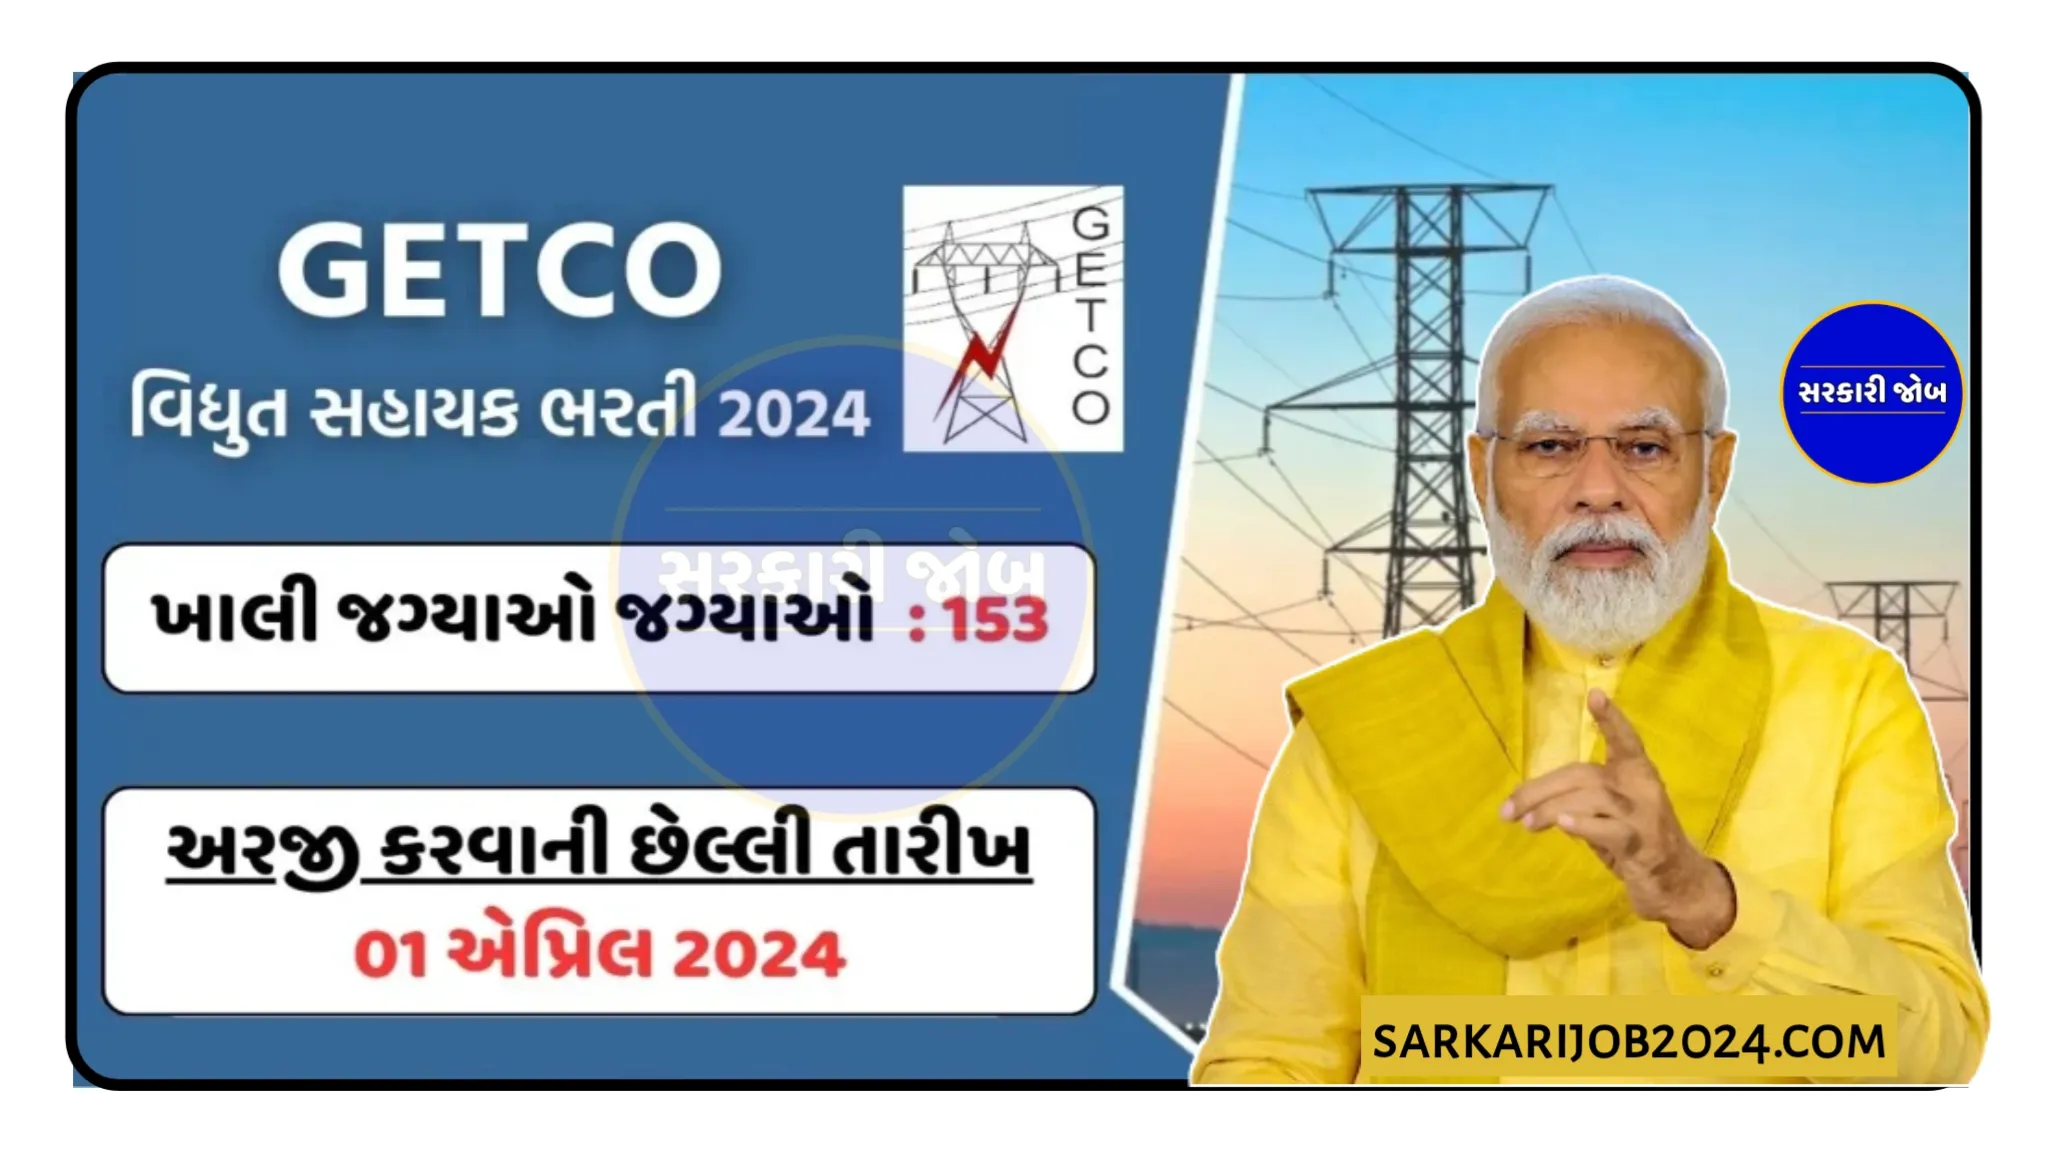 GETCO Recruitment 2024: ગુજરાત એનર્જી ટ્રાન્‍સમીશન કોર્પોરેશન લીમીટેડમાં વિદ્યુત સહાયકની 153+ જગ્યાઓ પર સરકારી નોકરીનો મોકો